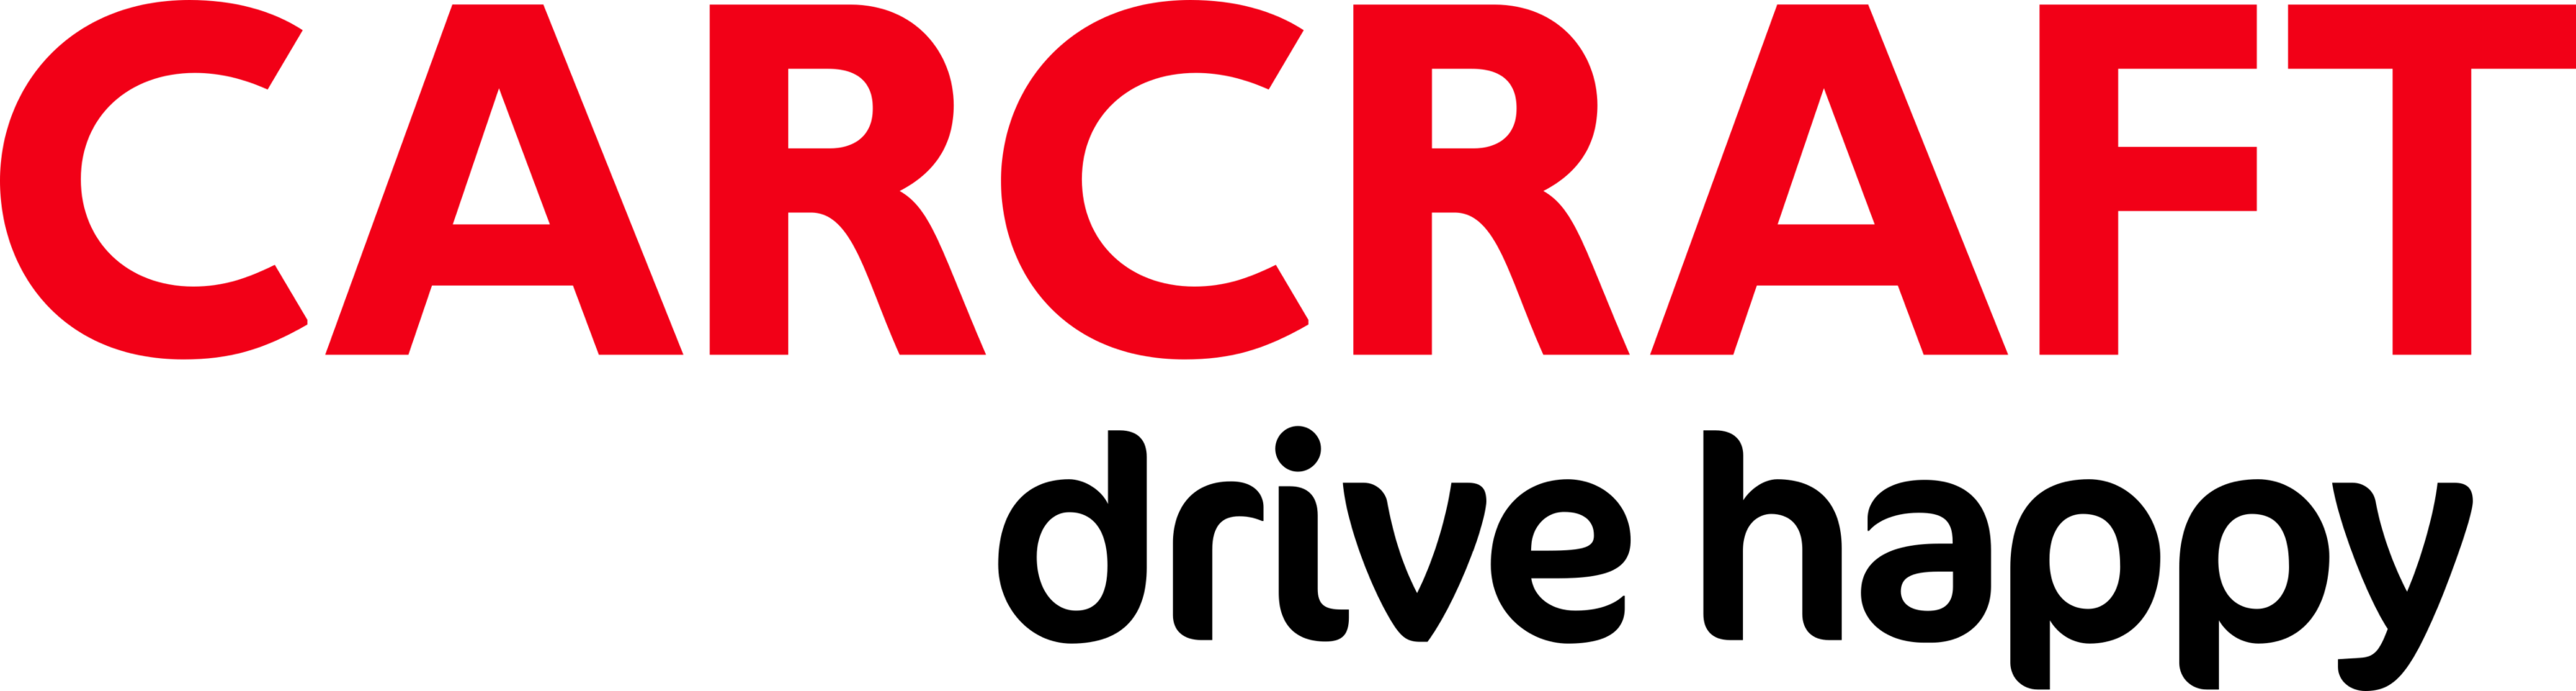 Carcraft Logo